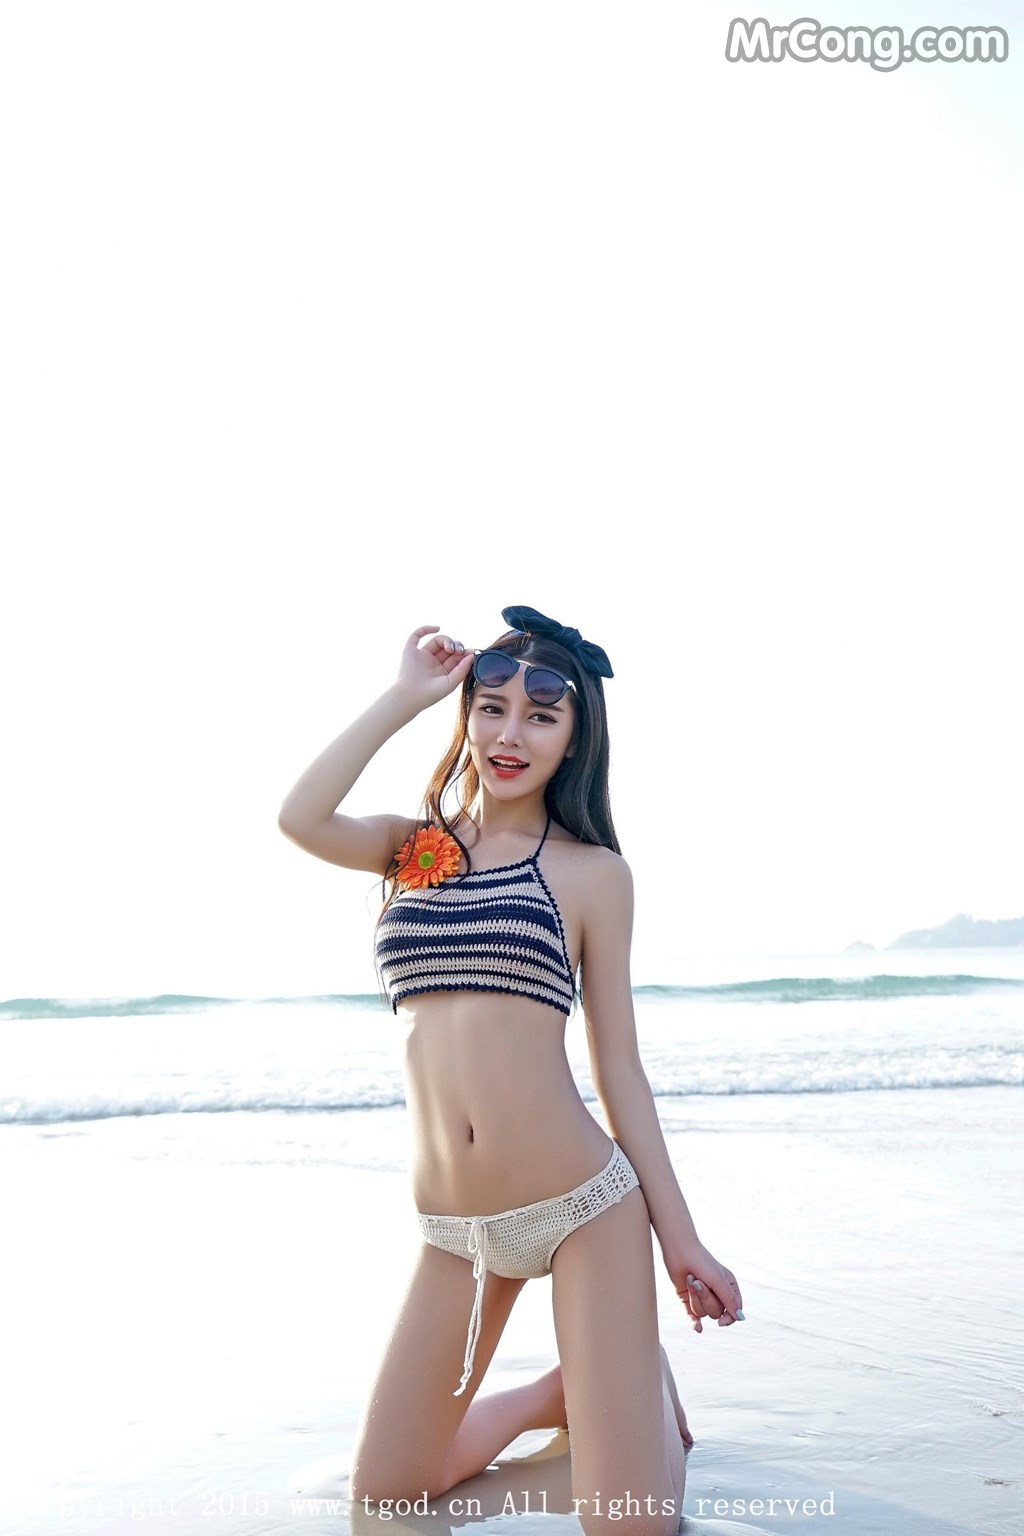 TGOD 2015-11-25: Model Xu Yan Xin (徐妍馨 Mandy) (53 photos)